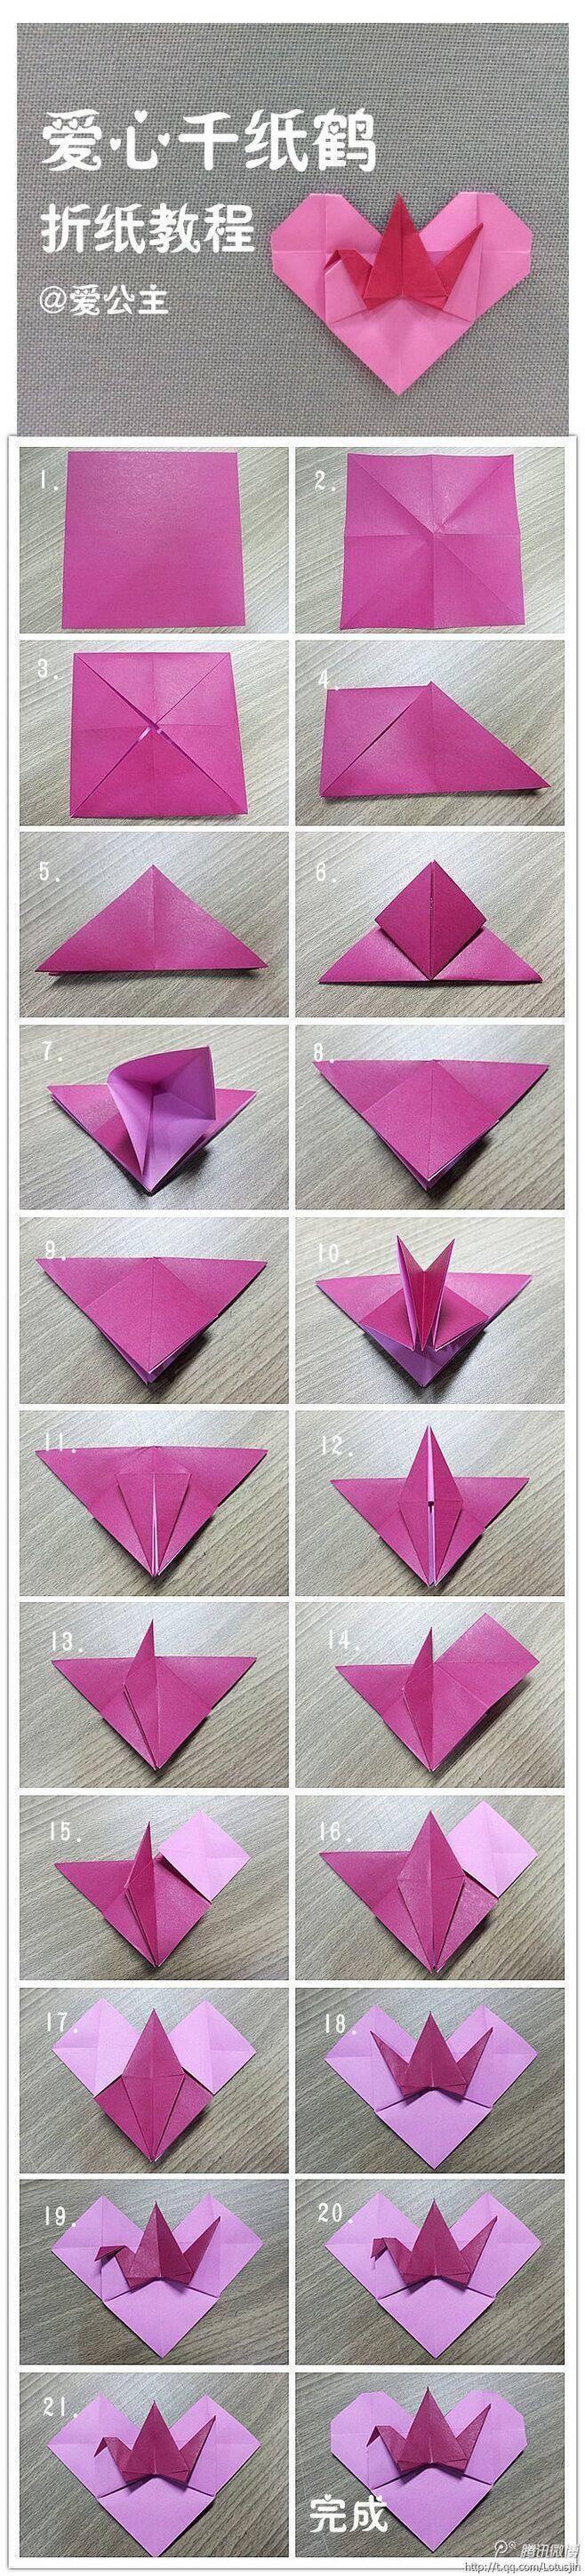 折千纸鹤的过程图片